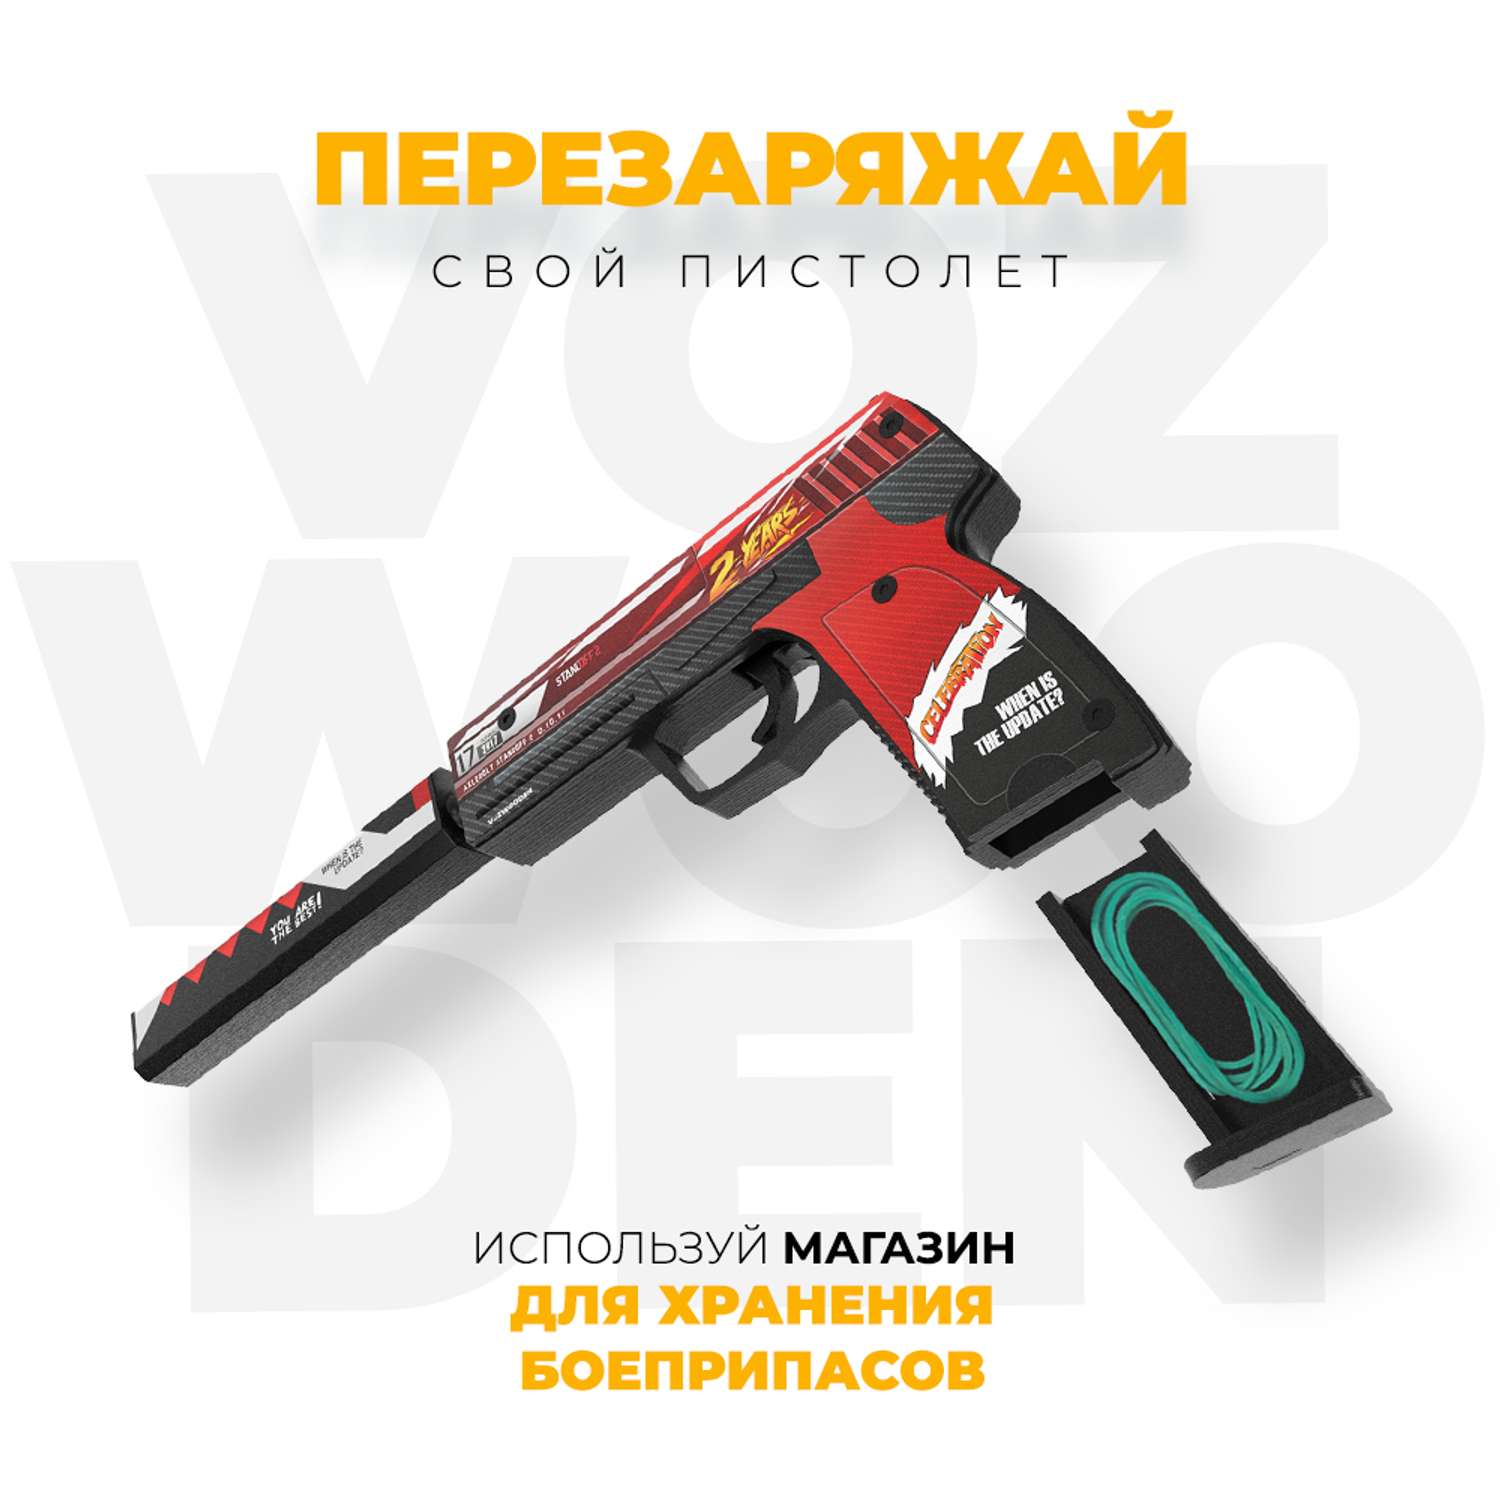 Игрушечный пистолет VozWooden USP 2 года Красный Стандофф 2 резинкострел деревянный - фото 5